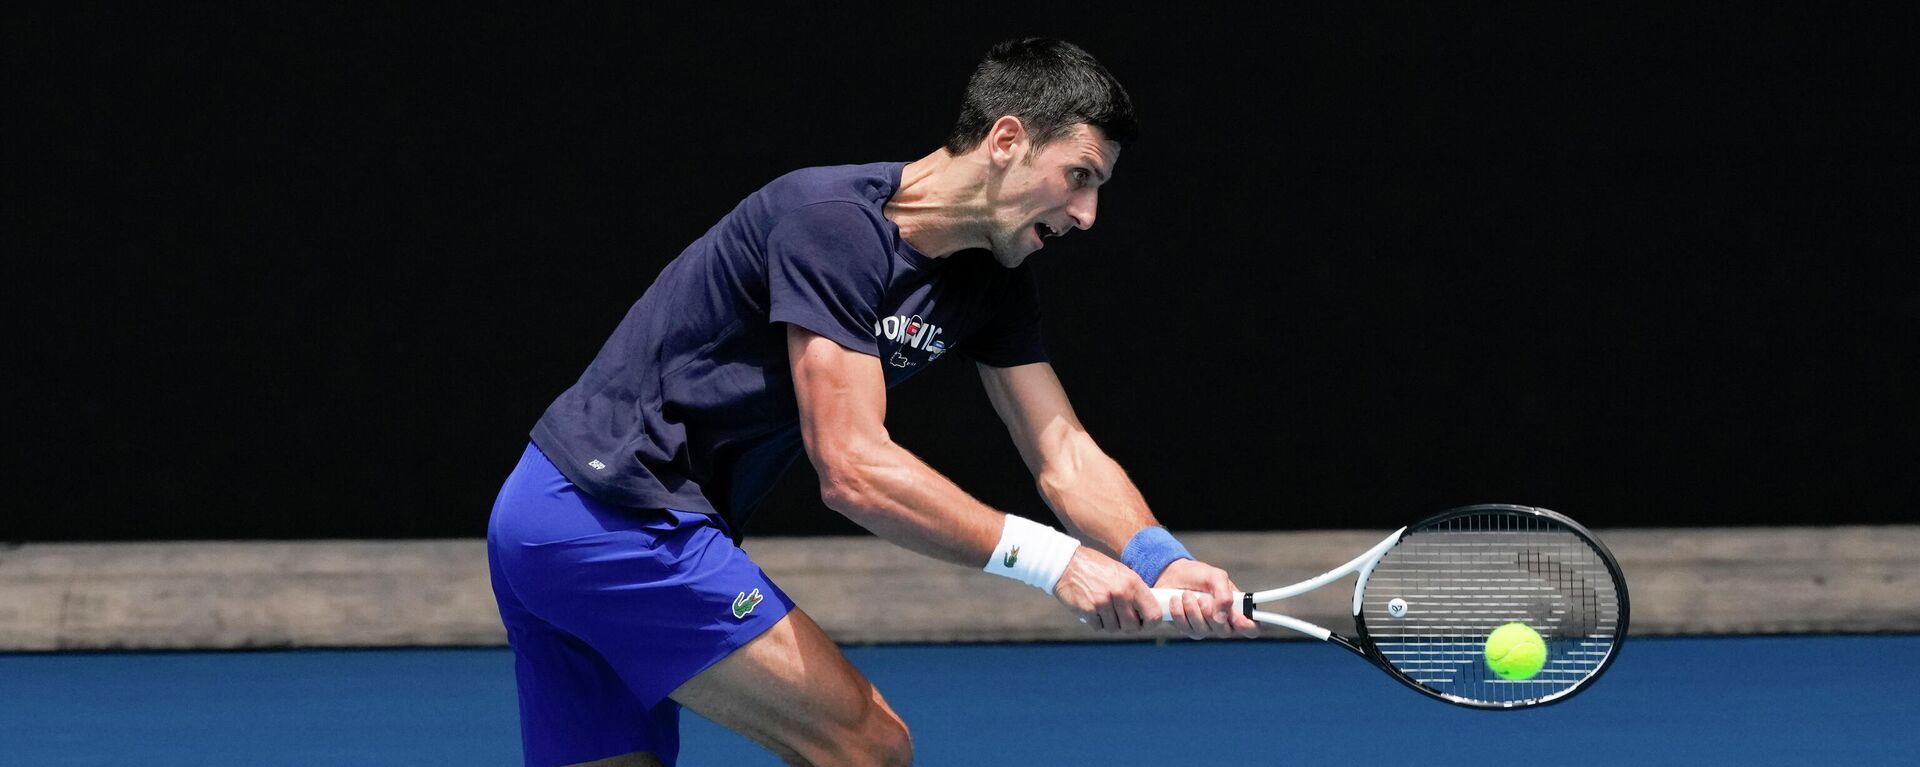 Avustralya Açık Tenis Turnuvası hazırlıklarını sürdüren tek erkekler dünya sıralamasının bir numarası Sırp tenisçi Novak Djokovic - Sputnik Türkiye, 1920, 16.01.2022